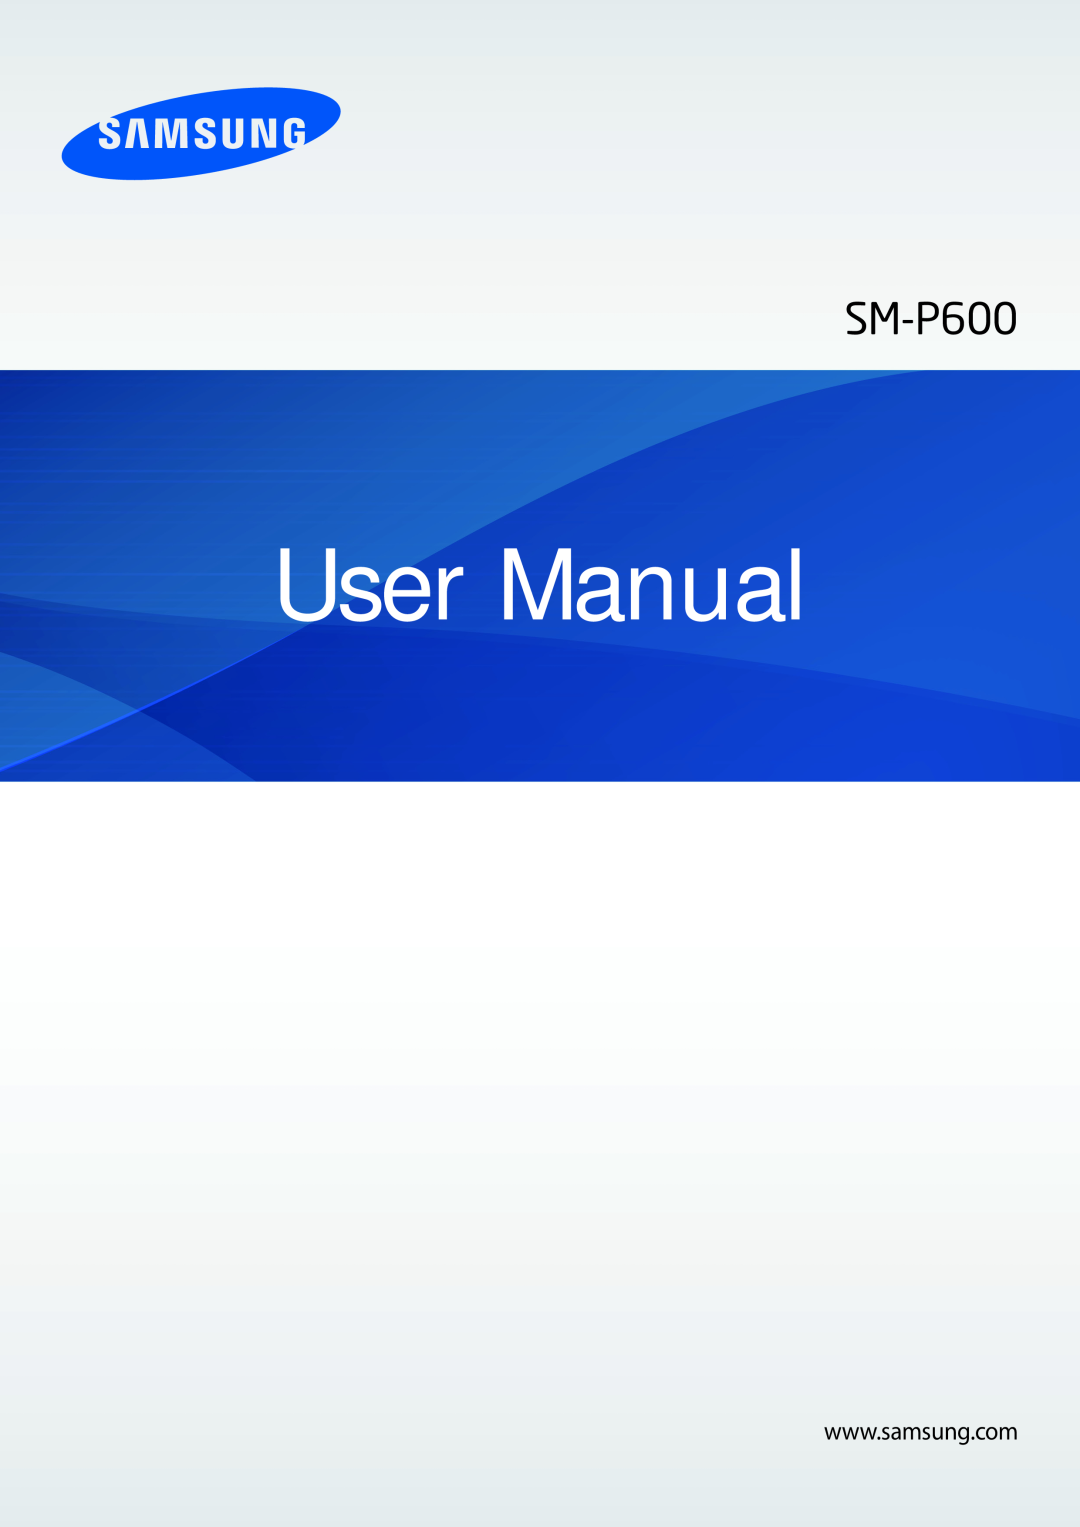 Samsung SM-P6000ZKEDBT, SM-P6000ZWAXEO, SM-P6000ZKAEUR, SM-P6000ZKAATO, SM-P6000ZWEATO, SM-P6000ZWATPH manual User Manual 